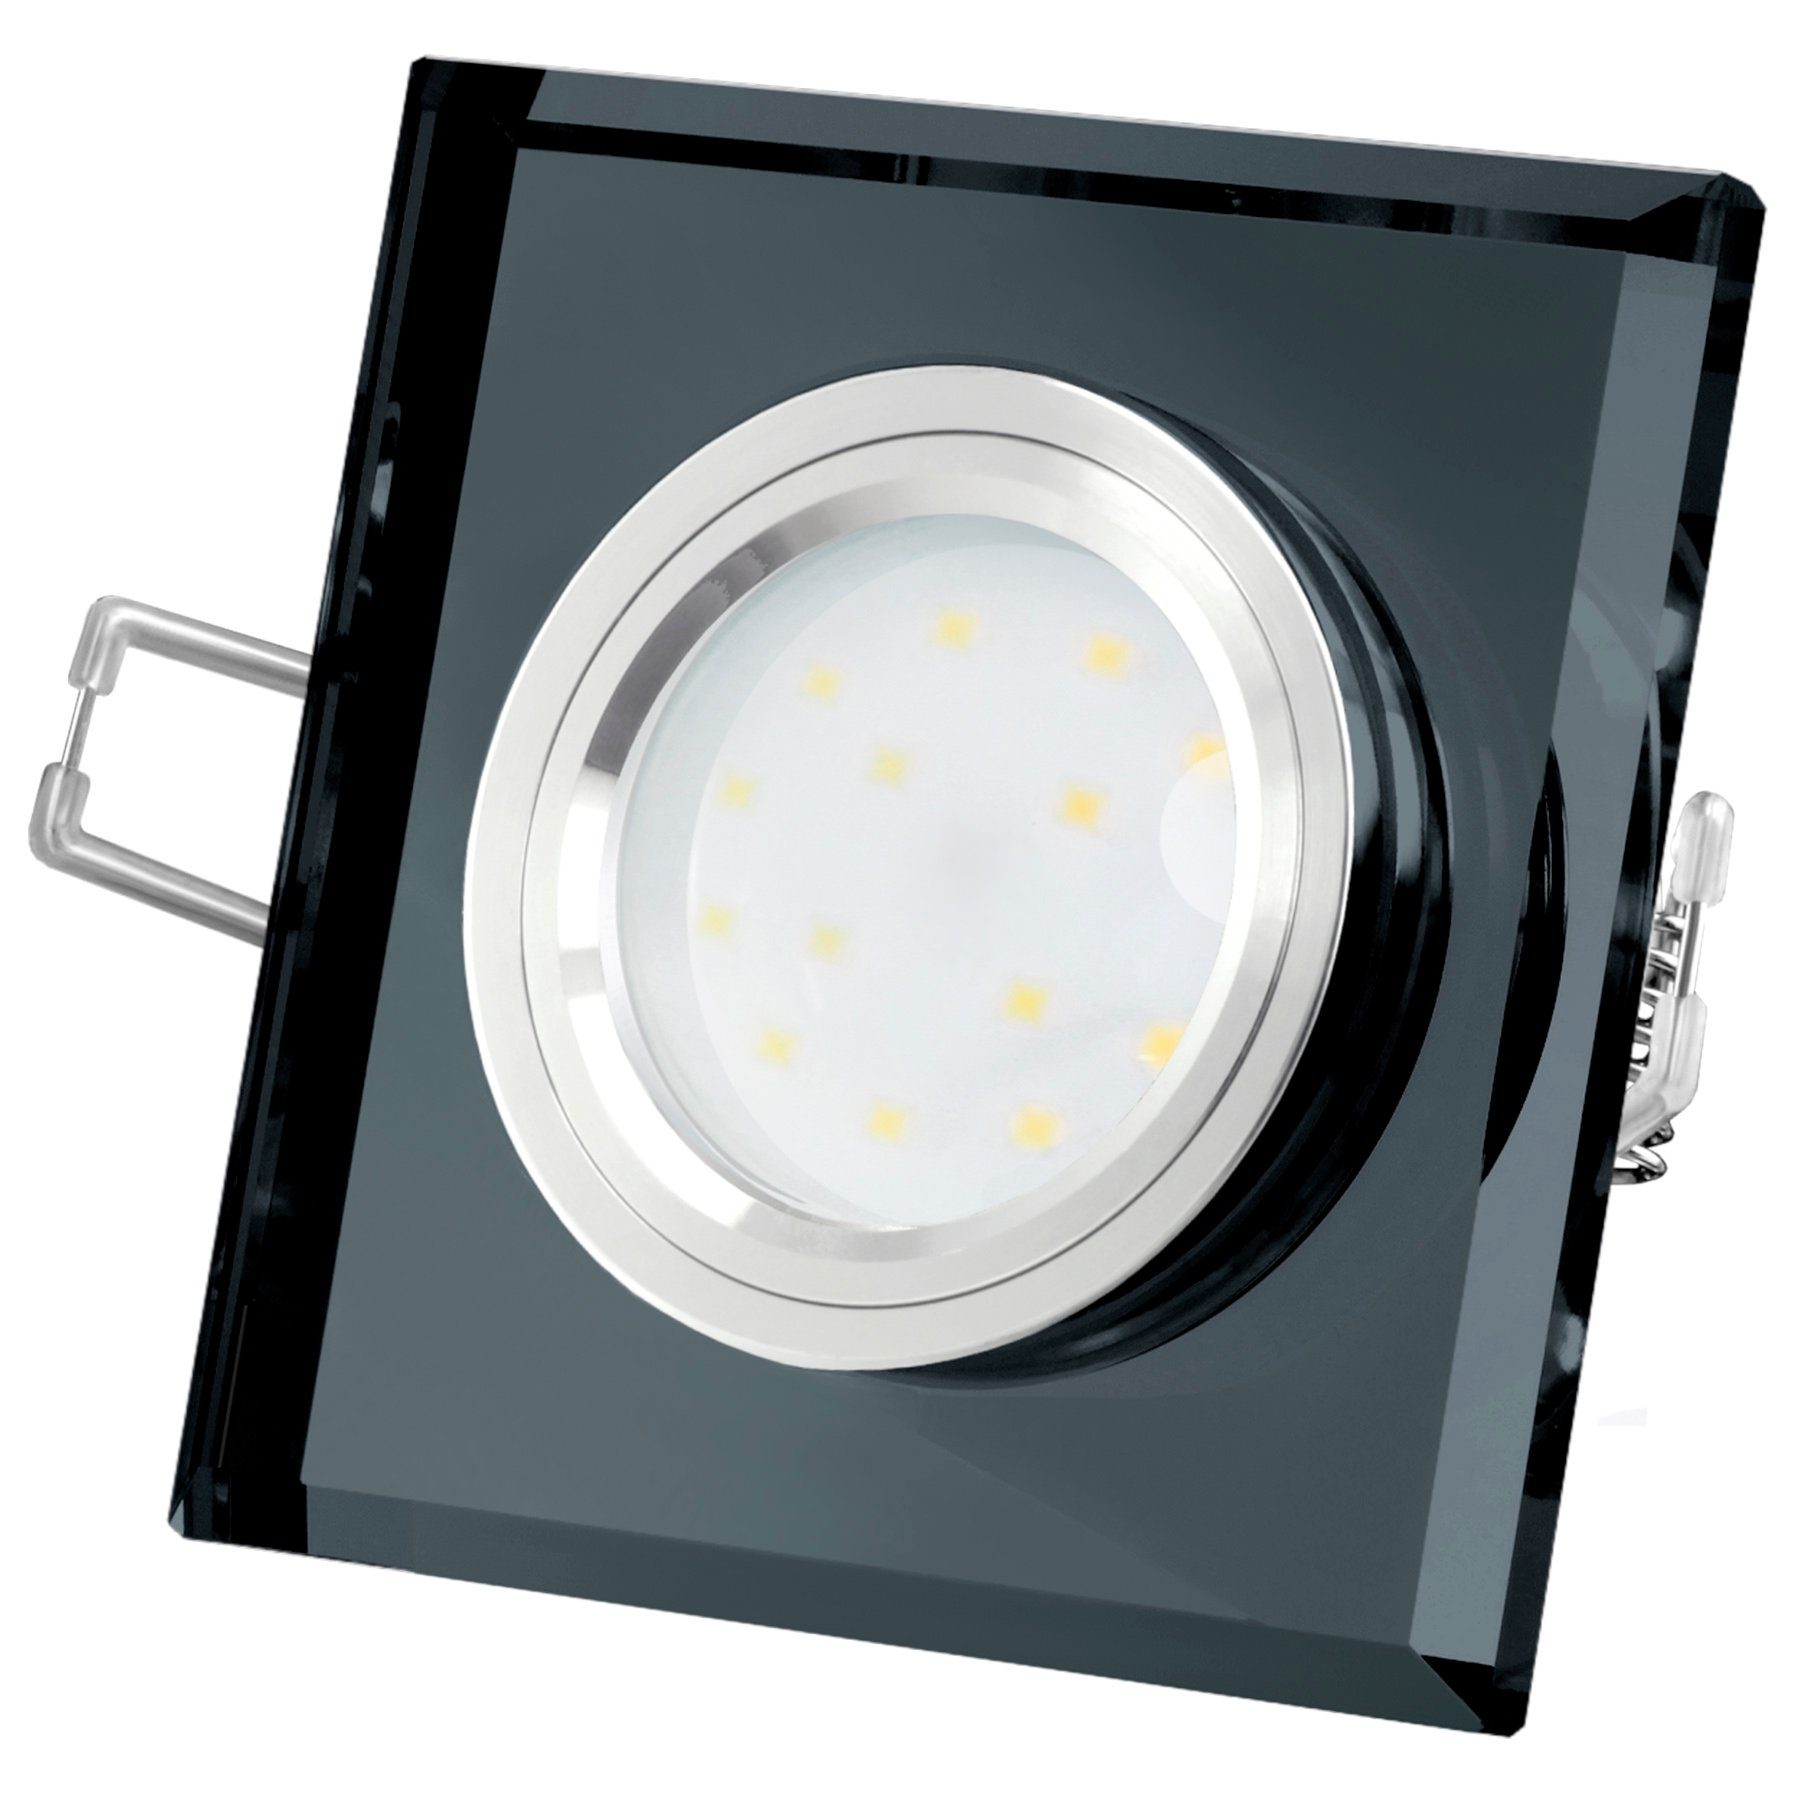 SSC-LUXon LED Einbaustrahler Flache Design Einbauleuchte aus Glas quadratisch schwarz spiegelnd, Neutralweiß